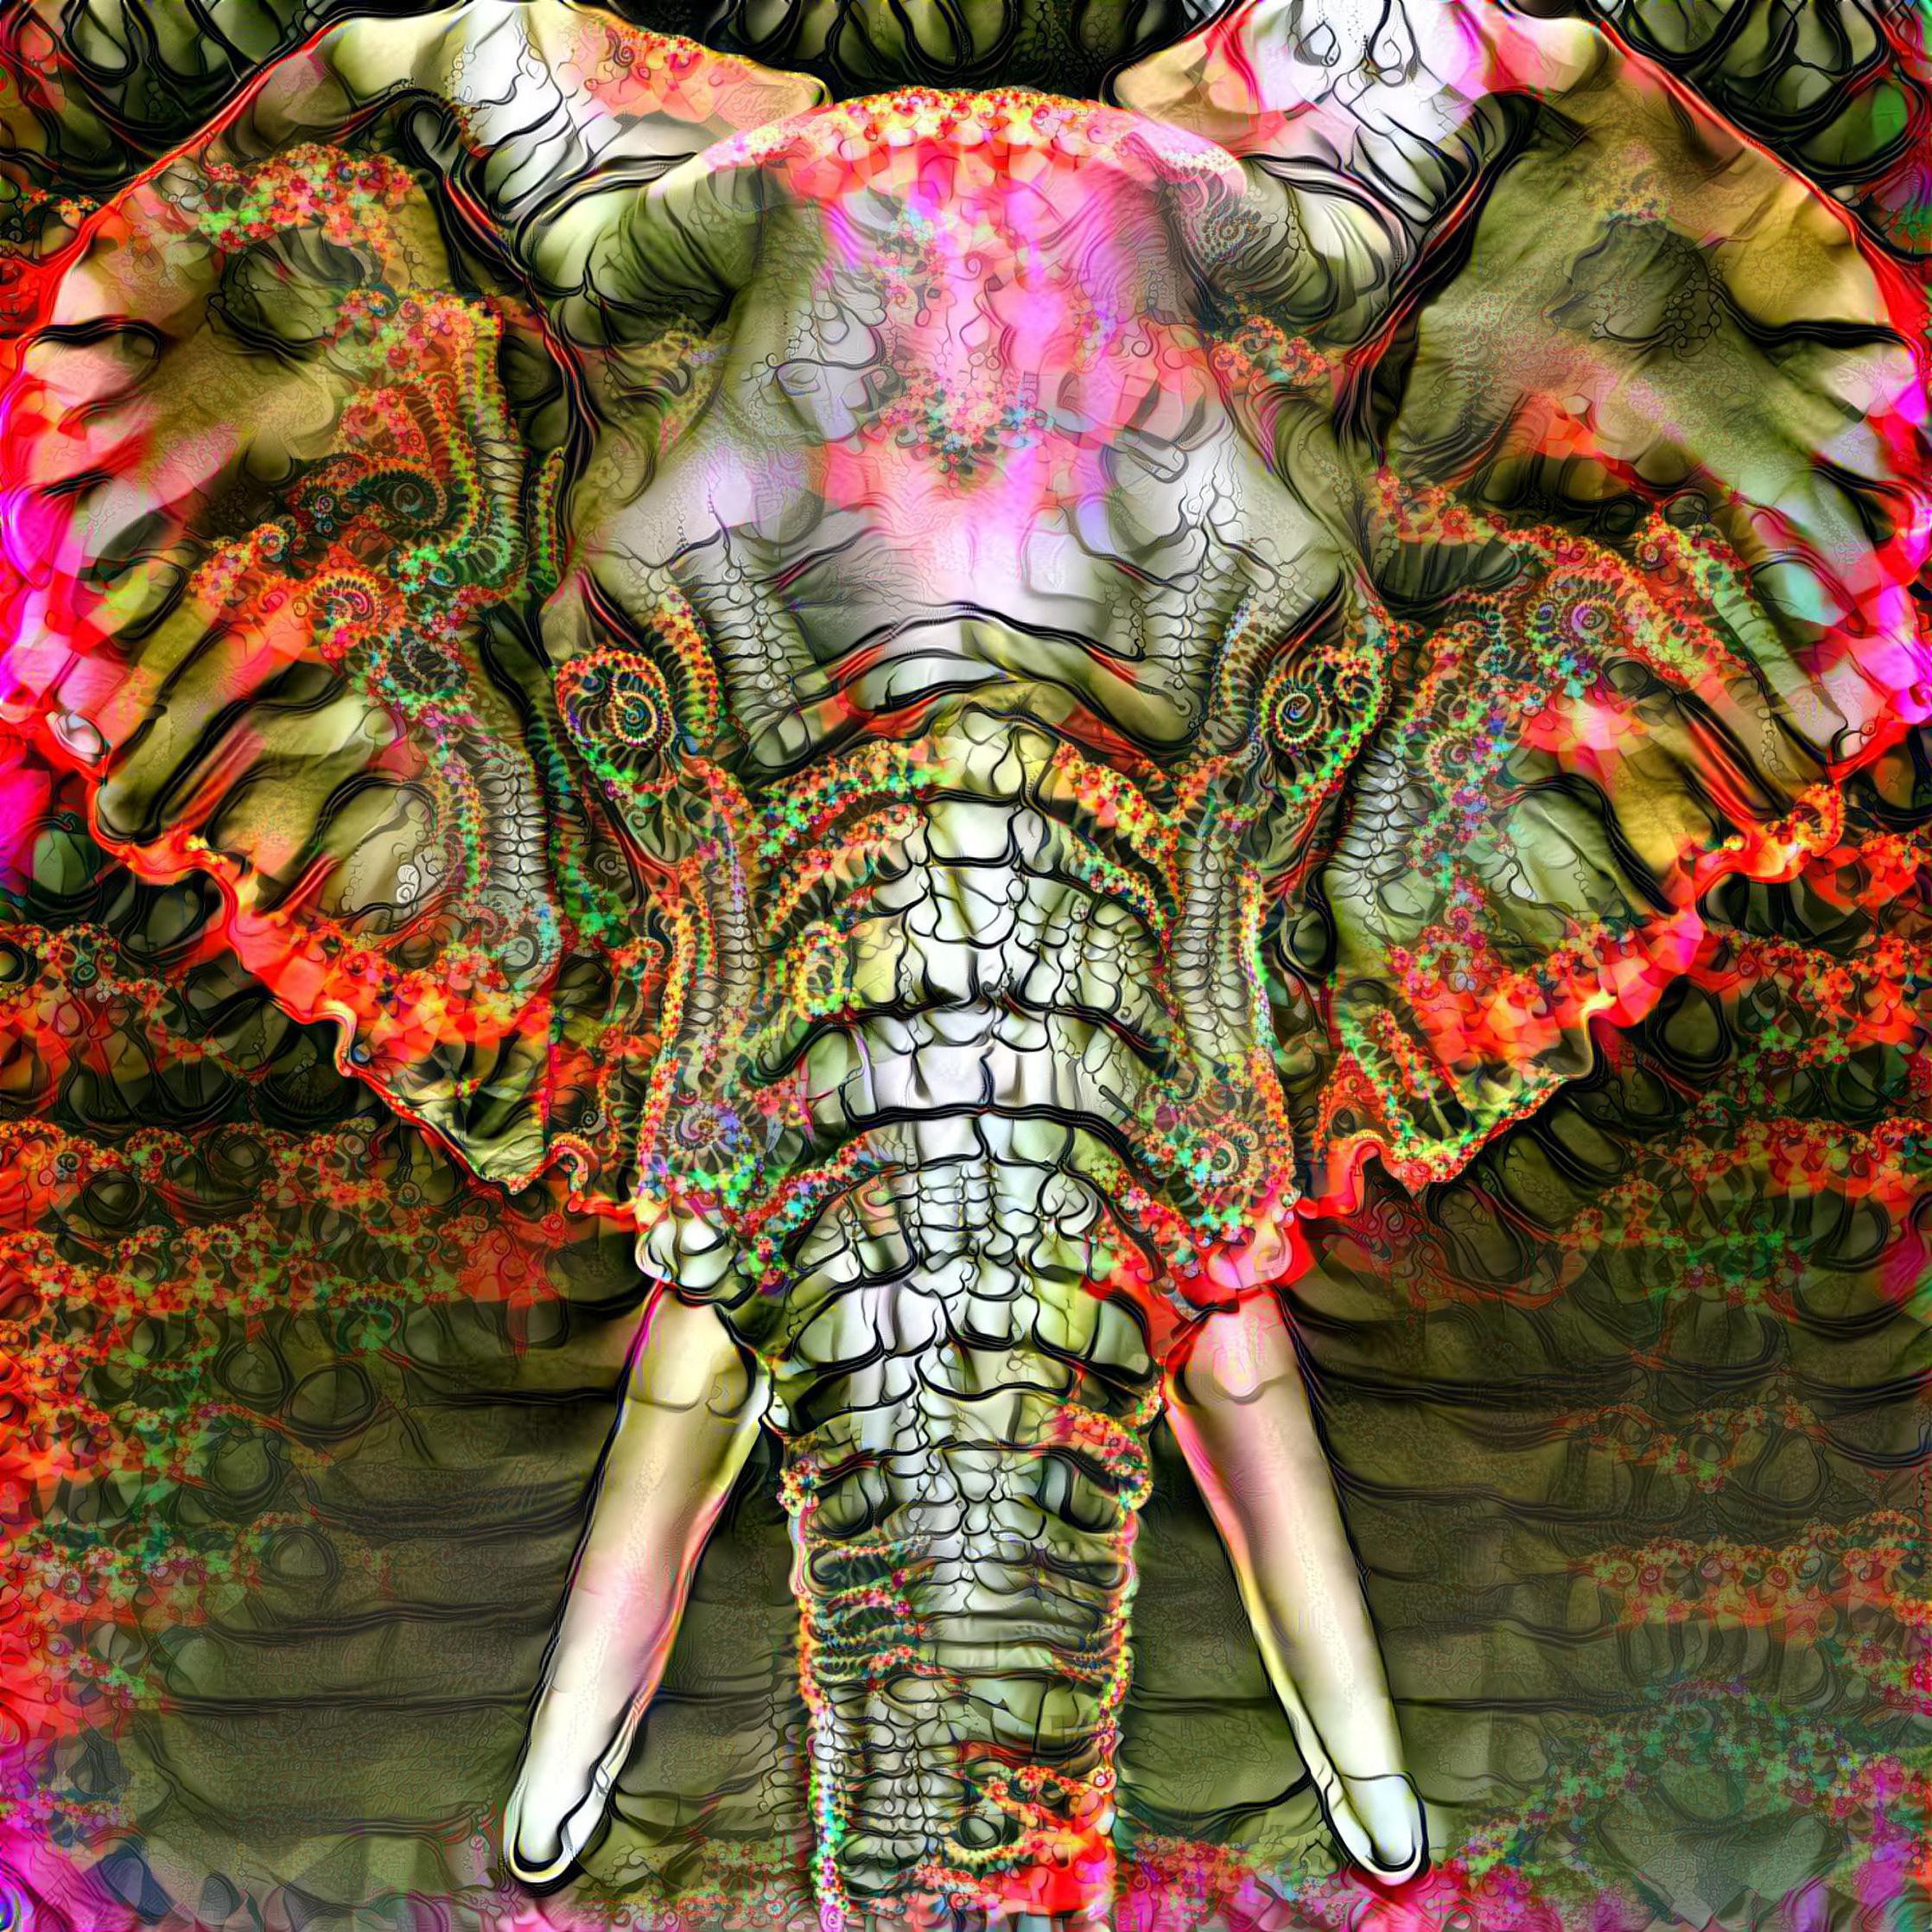 Elephandelic